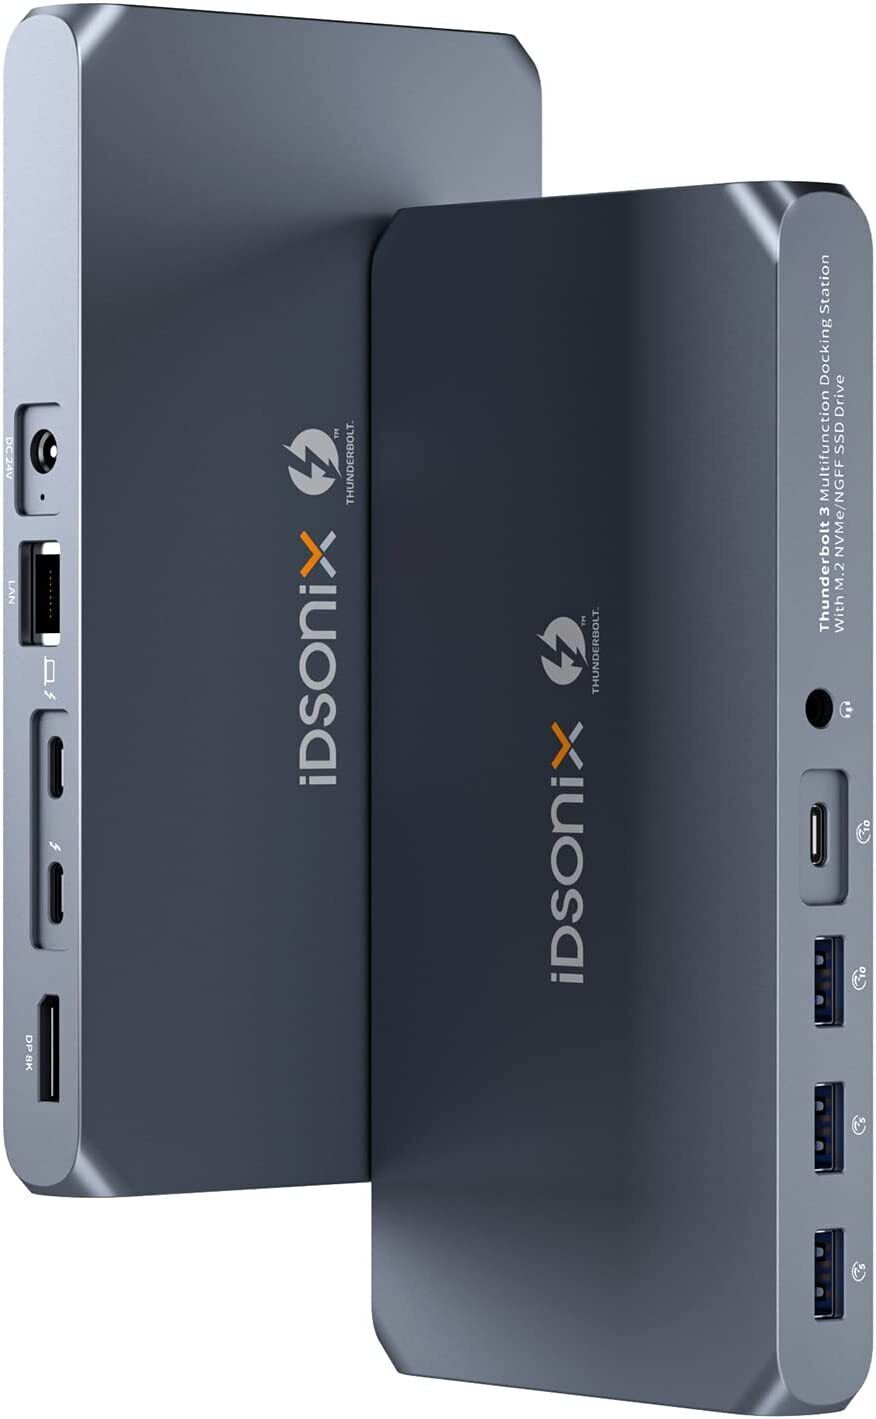 iDsonix Thunderbolt 3 Docking Station Dual 8K@60HZ Display NVMe&SATA for MacBook